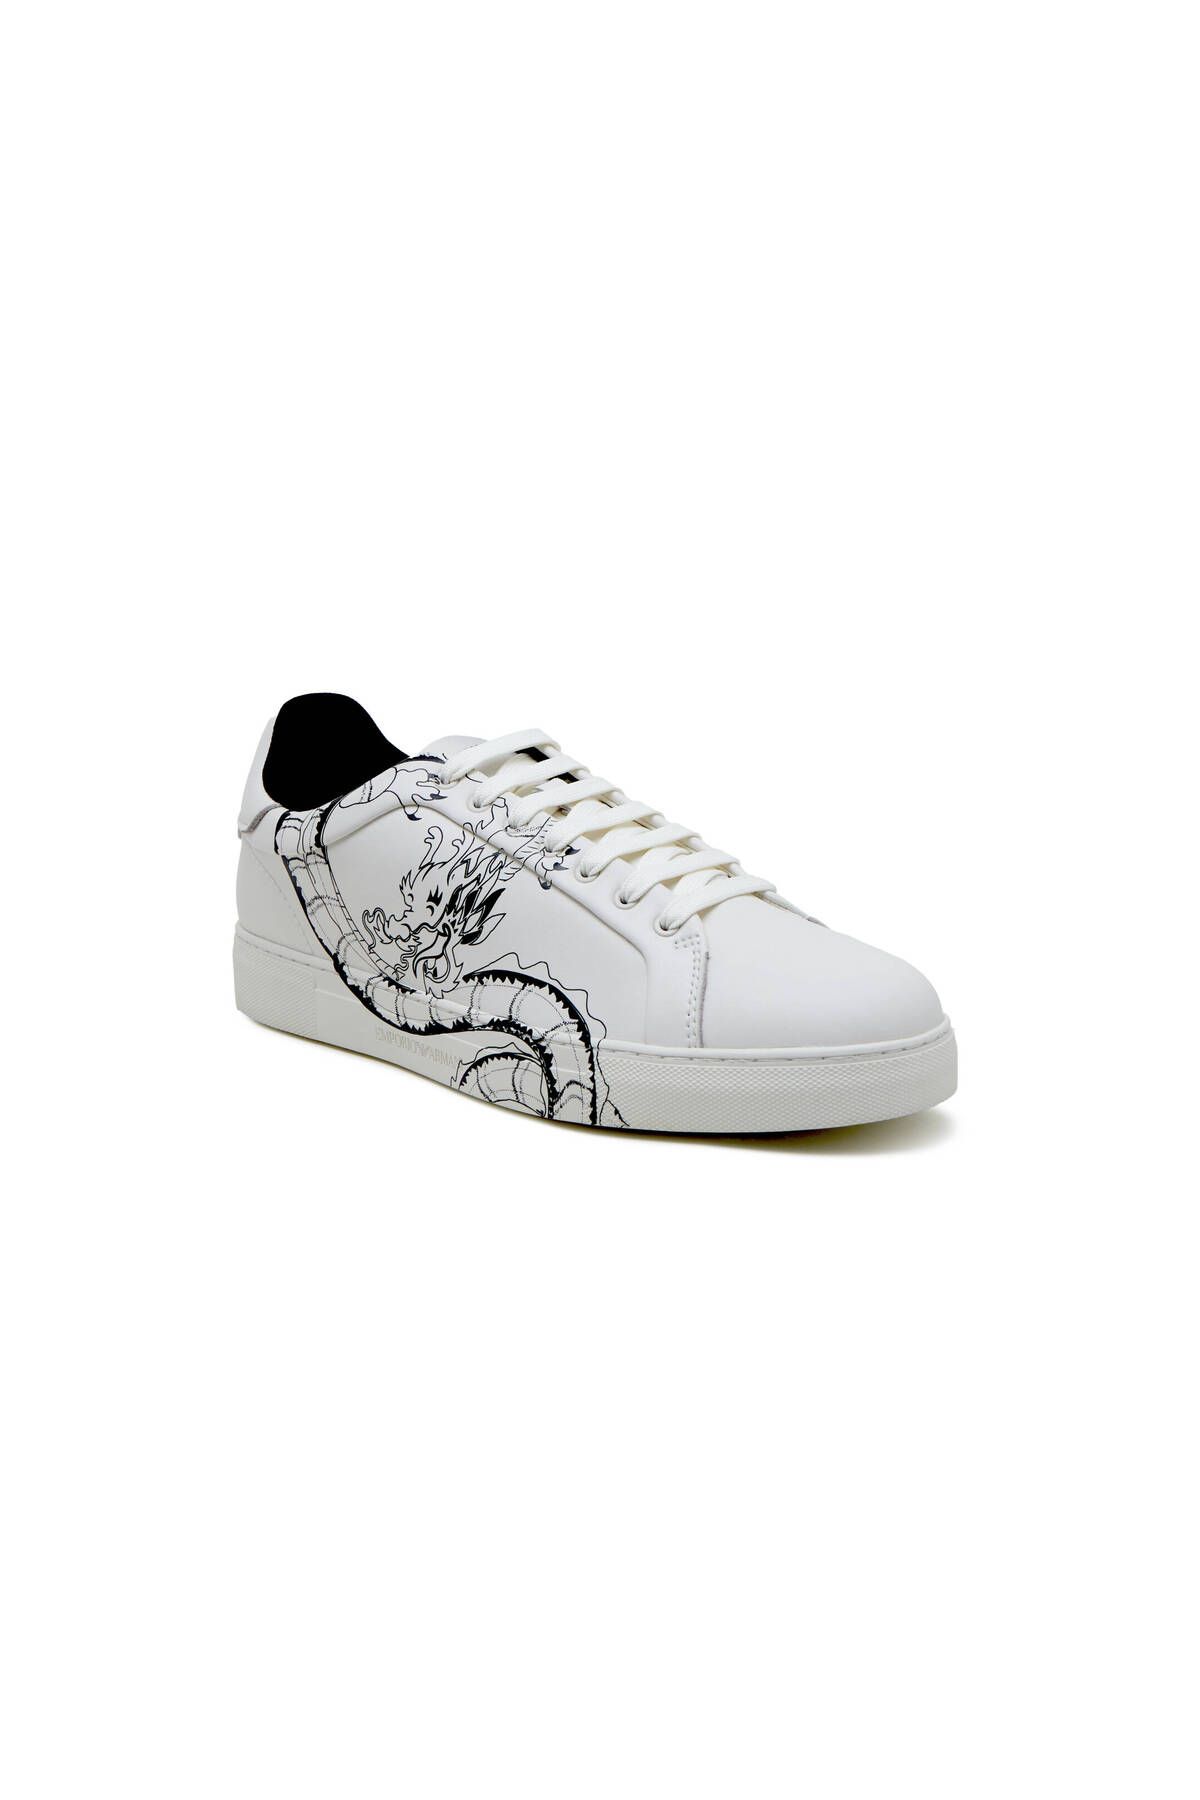 Emporio Armani Erkek Marka Logolu Bağcıklı Kaydırmaz Tabanlı Günlük Beyaz Sneaker EM000018 AF10032-U0003